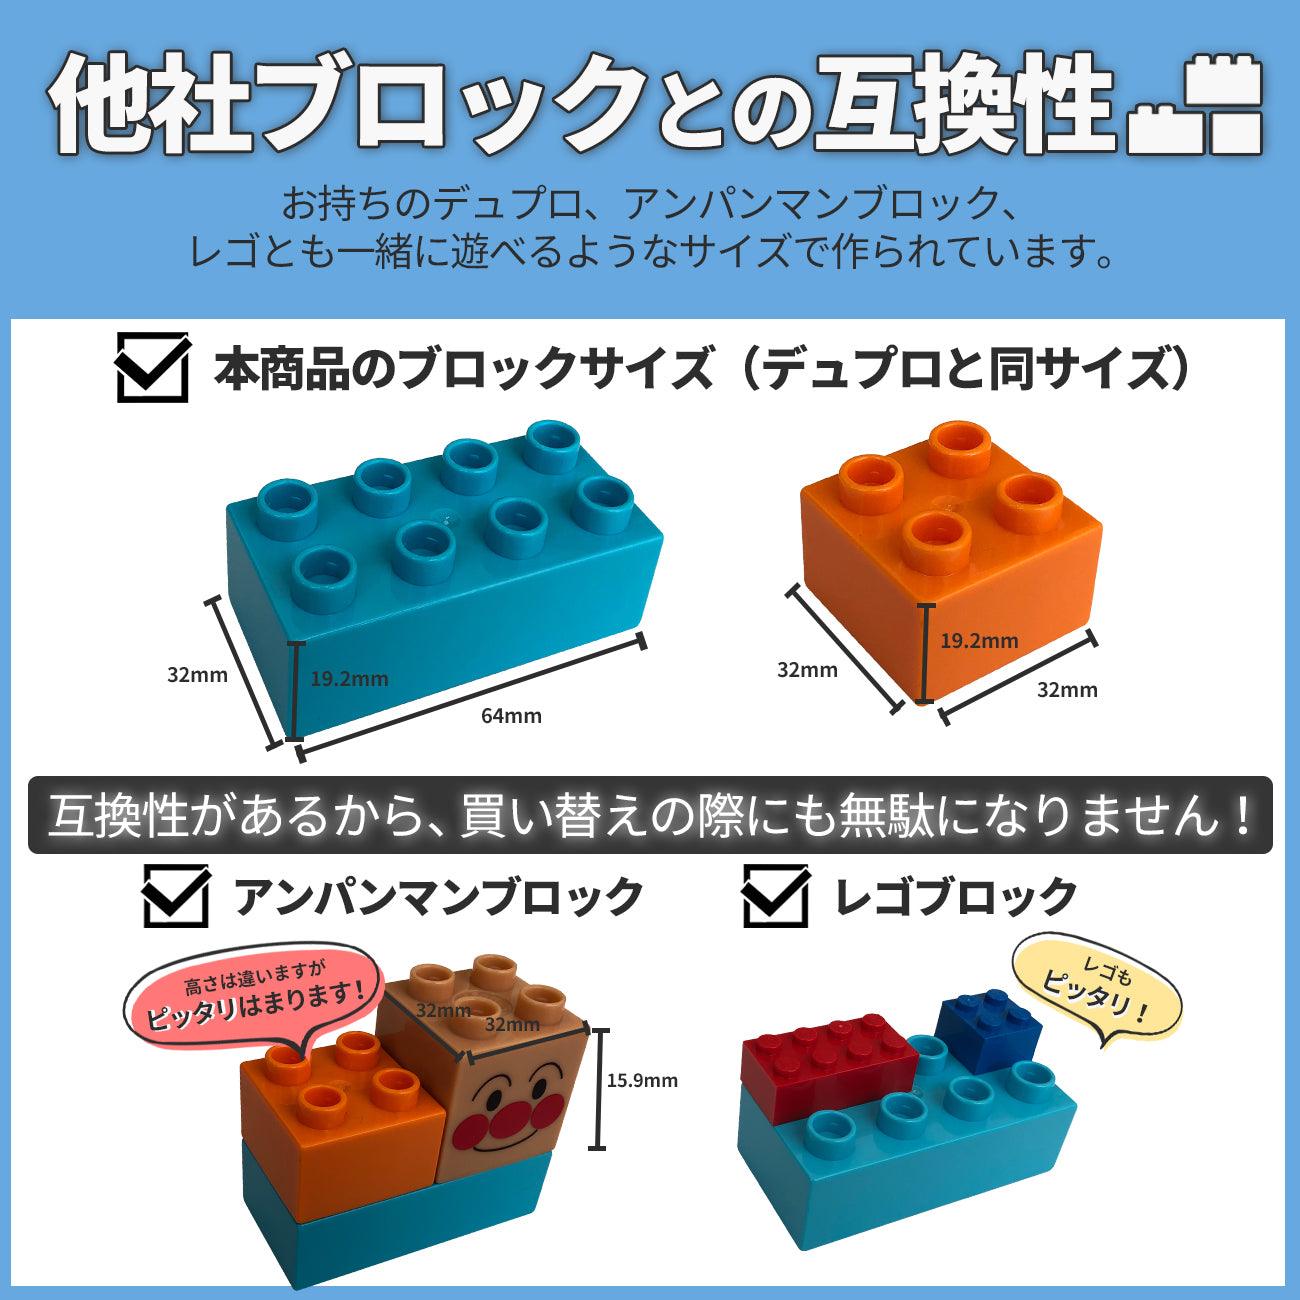 【ブロック買い増しに】 ブロックおもちゃ マカロンカラーブロックセット54ピース デュプロ アンパンマンブロック 互換